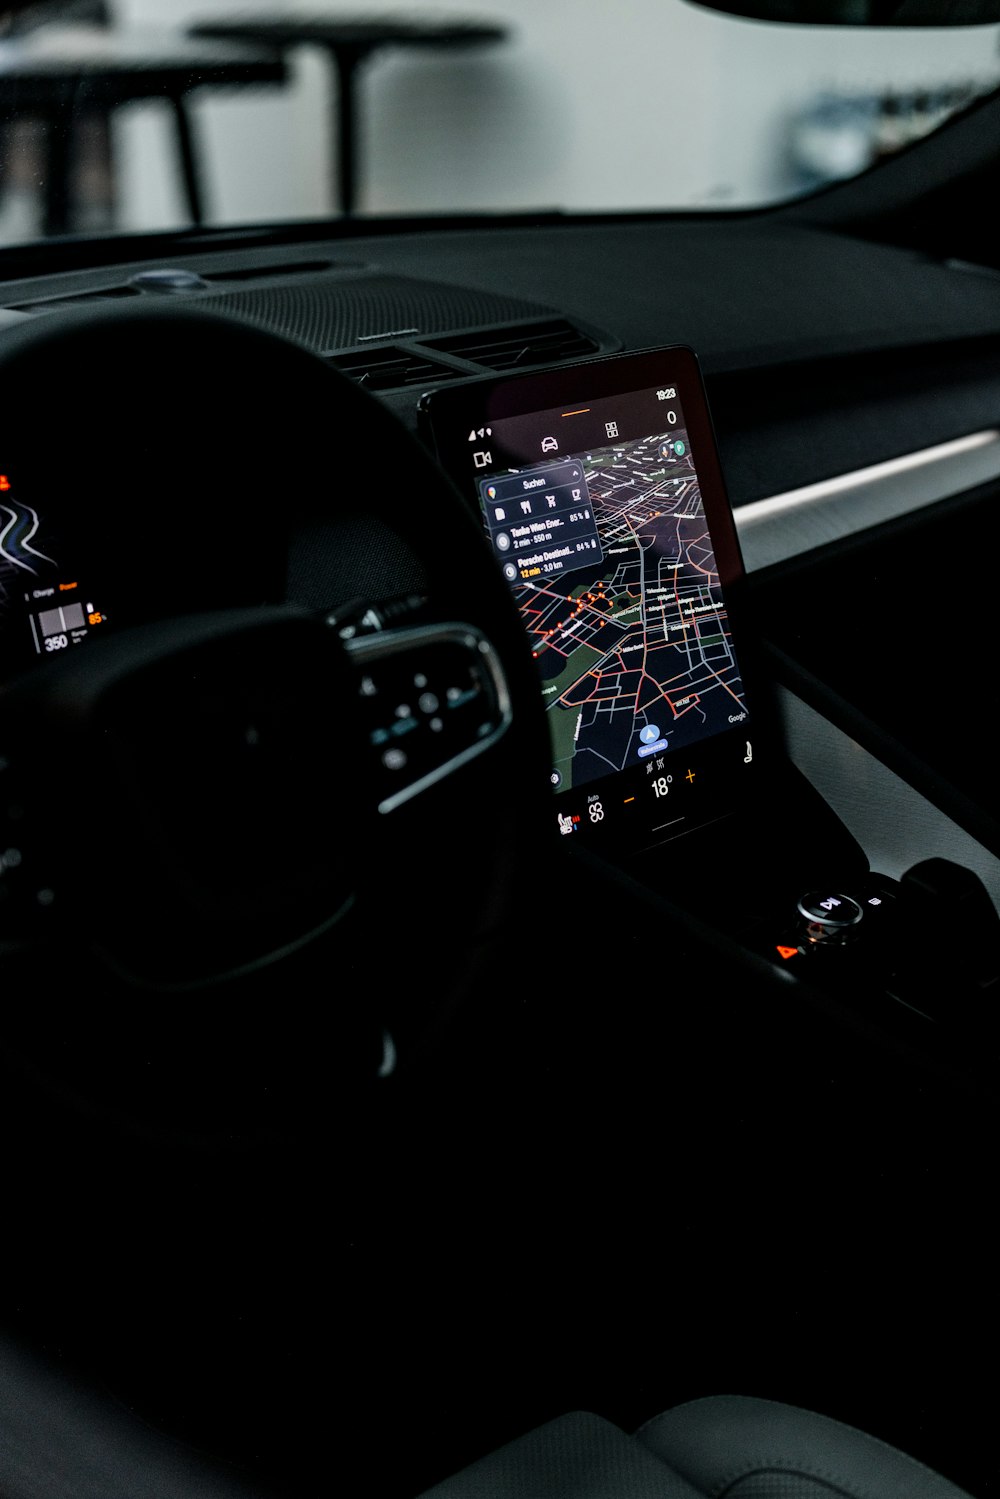 GPSデバイスを搭載した車のダッシュボード